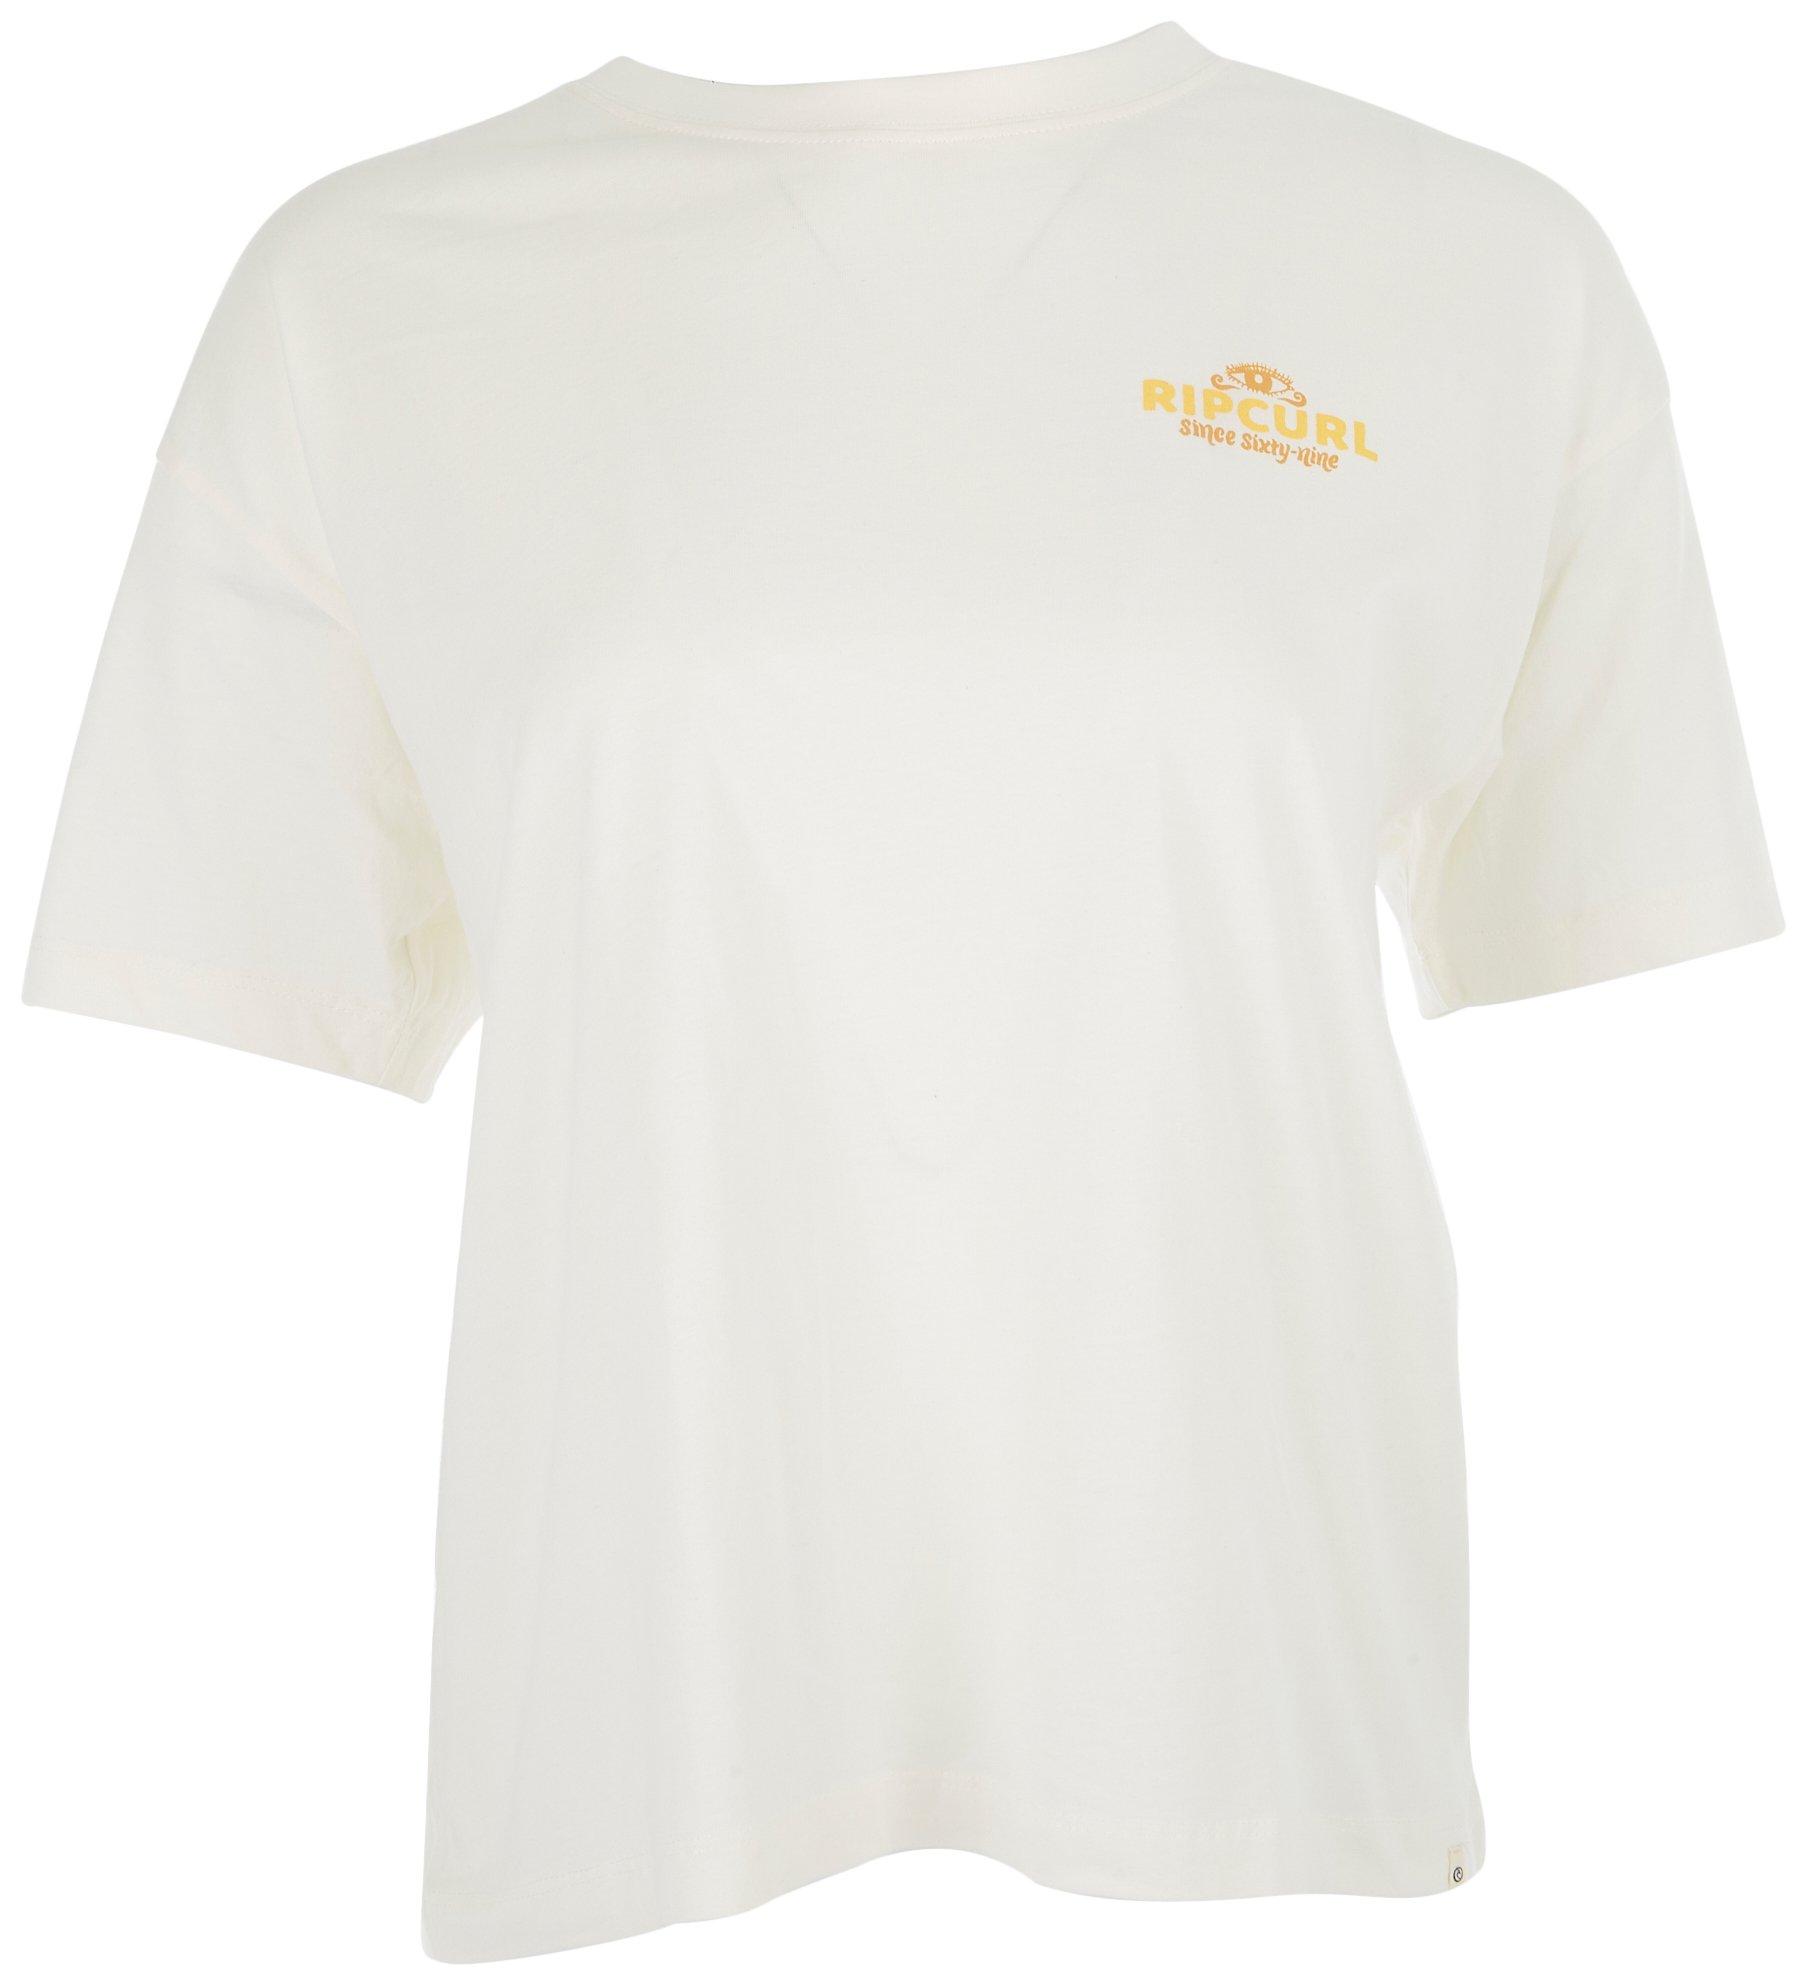 Bealls Barrelled Juniors Florida T-Shirt | Rip Heritage Curl